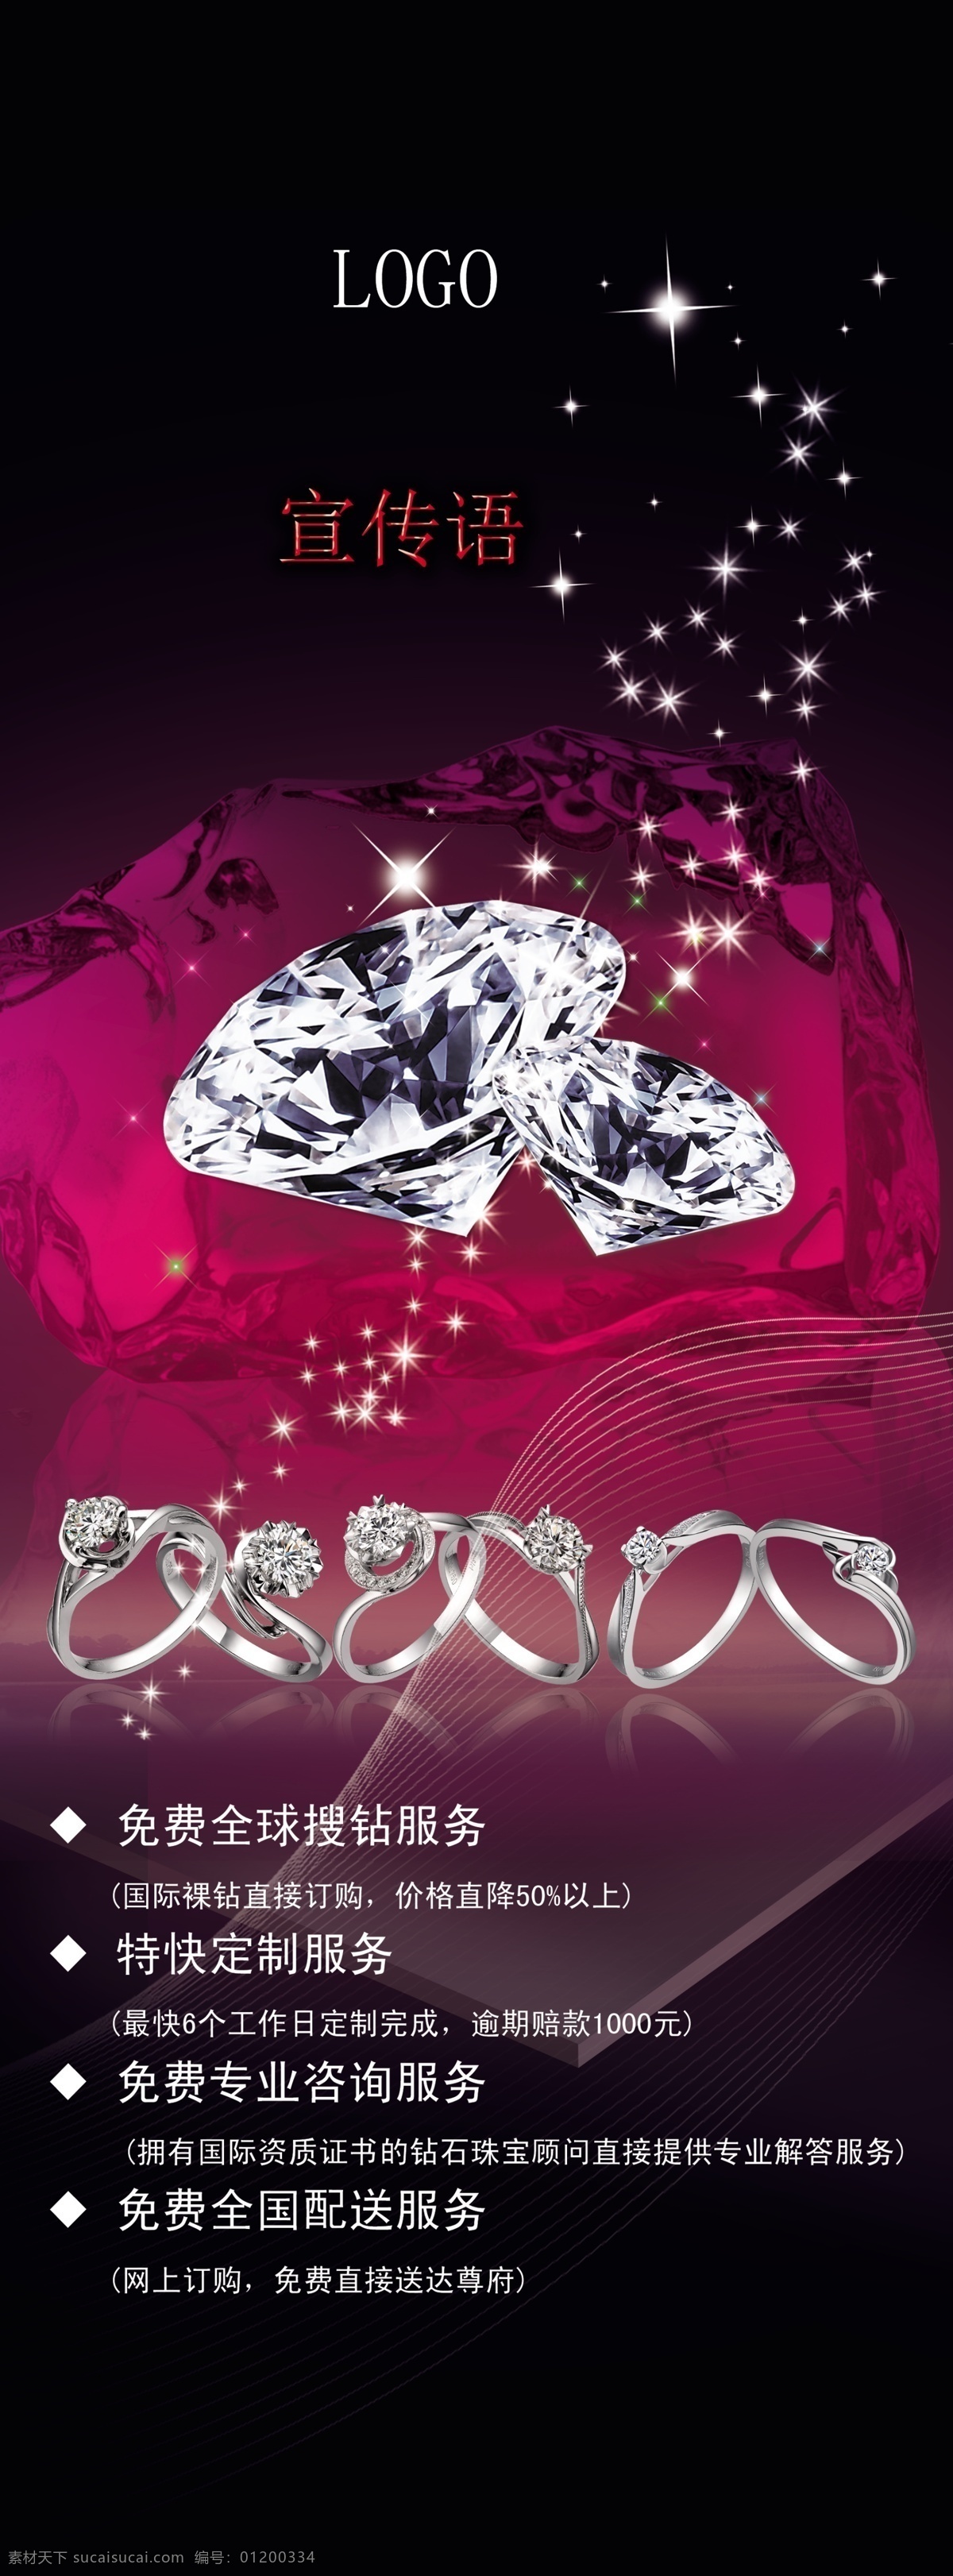 钻石展架海报 钻石 珠宝 订制 宝石 蓝宝石 宝石订制 x展架 易拉宝 平面广告